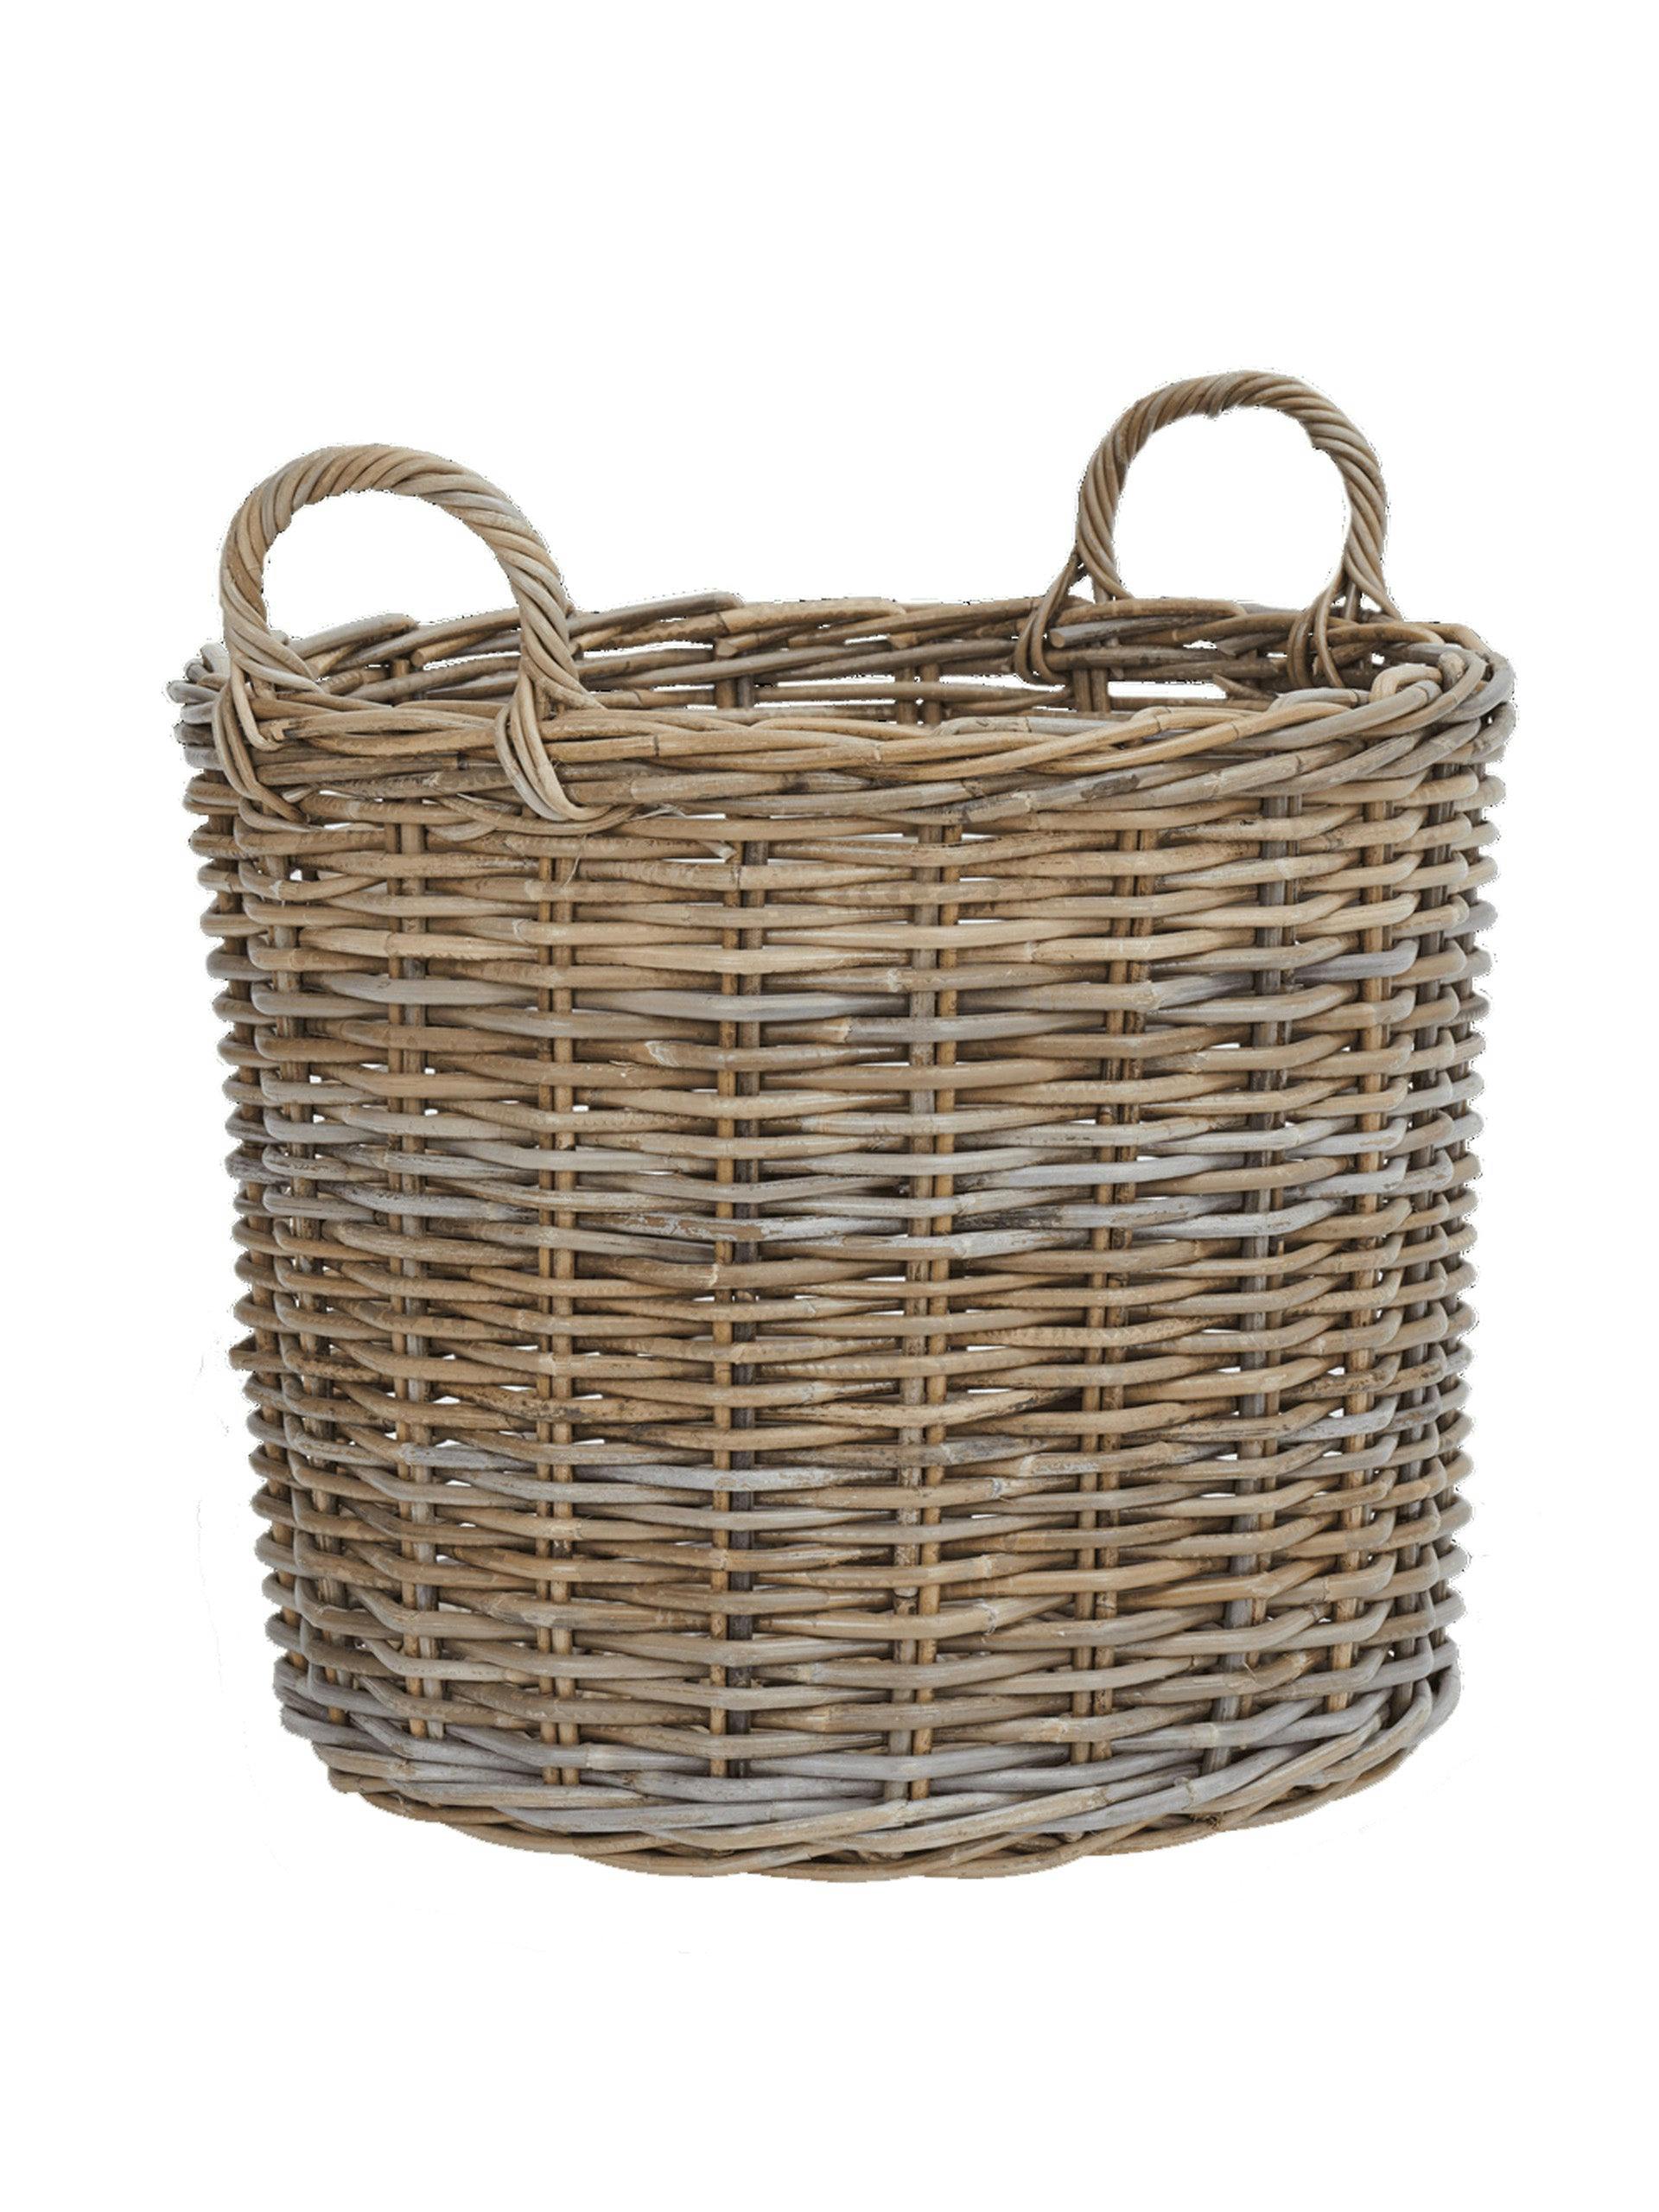 Somerton round log basket